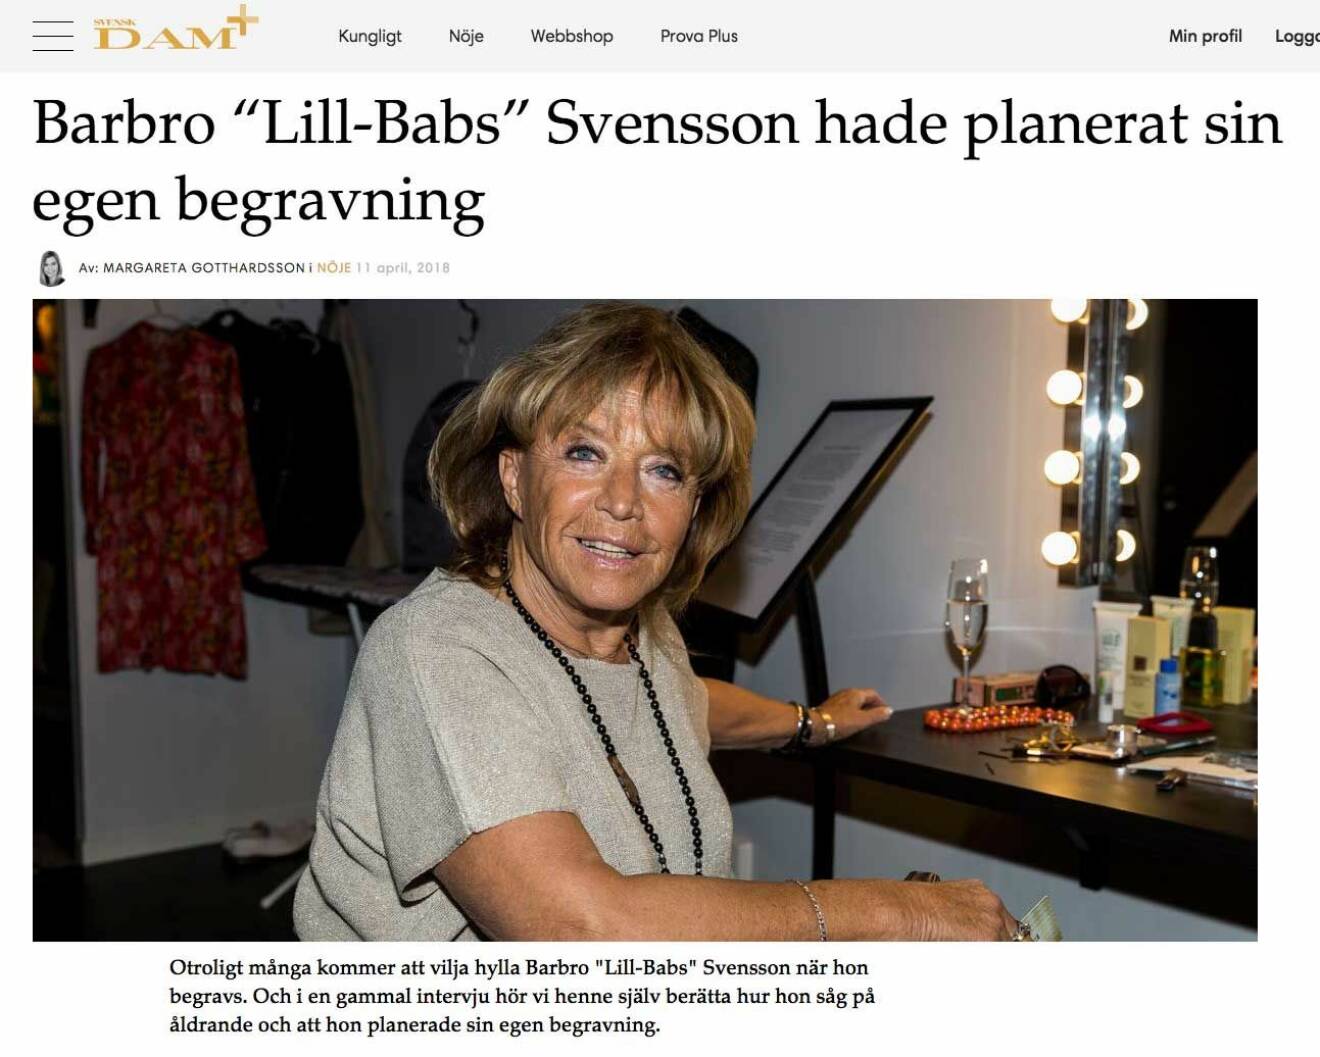 Barbro “Lill-Babs” Svensson hade planerat sin egen begravning